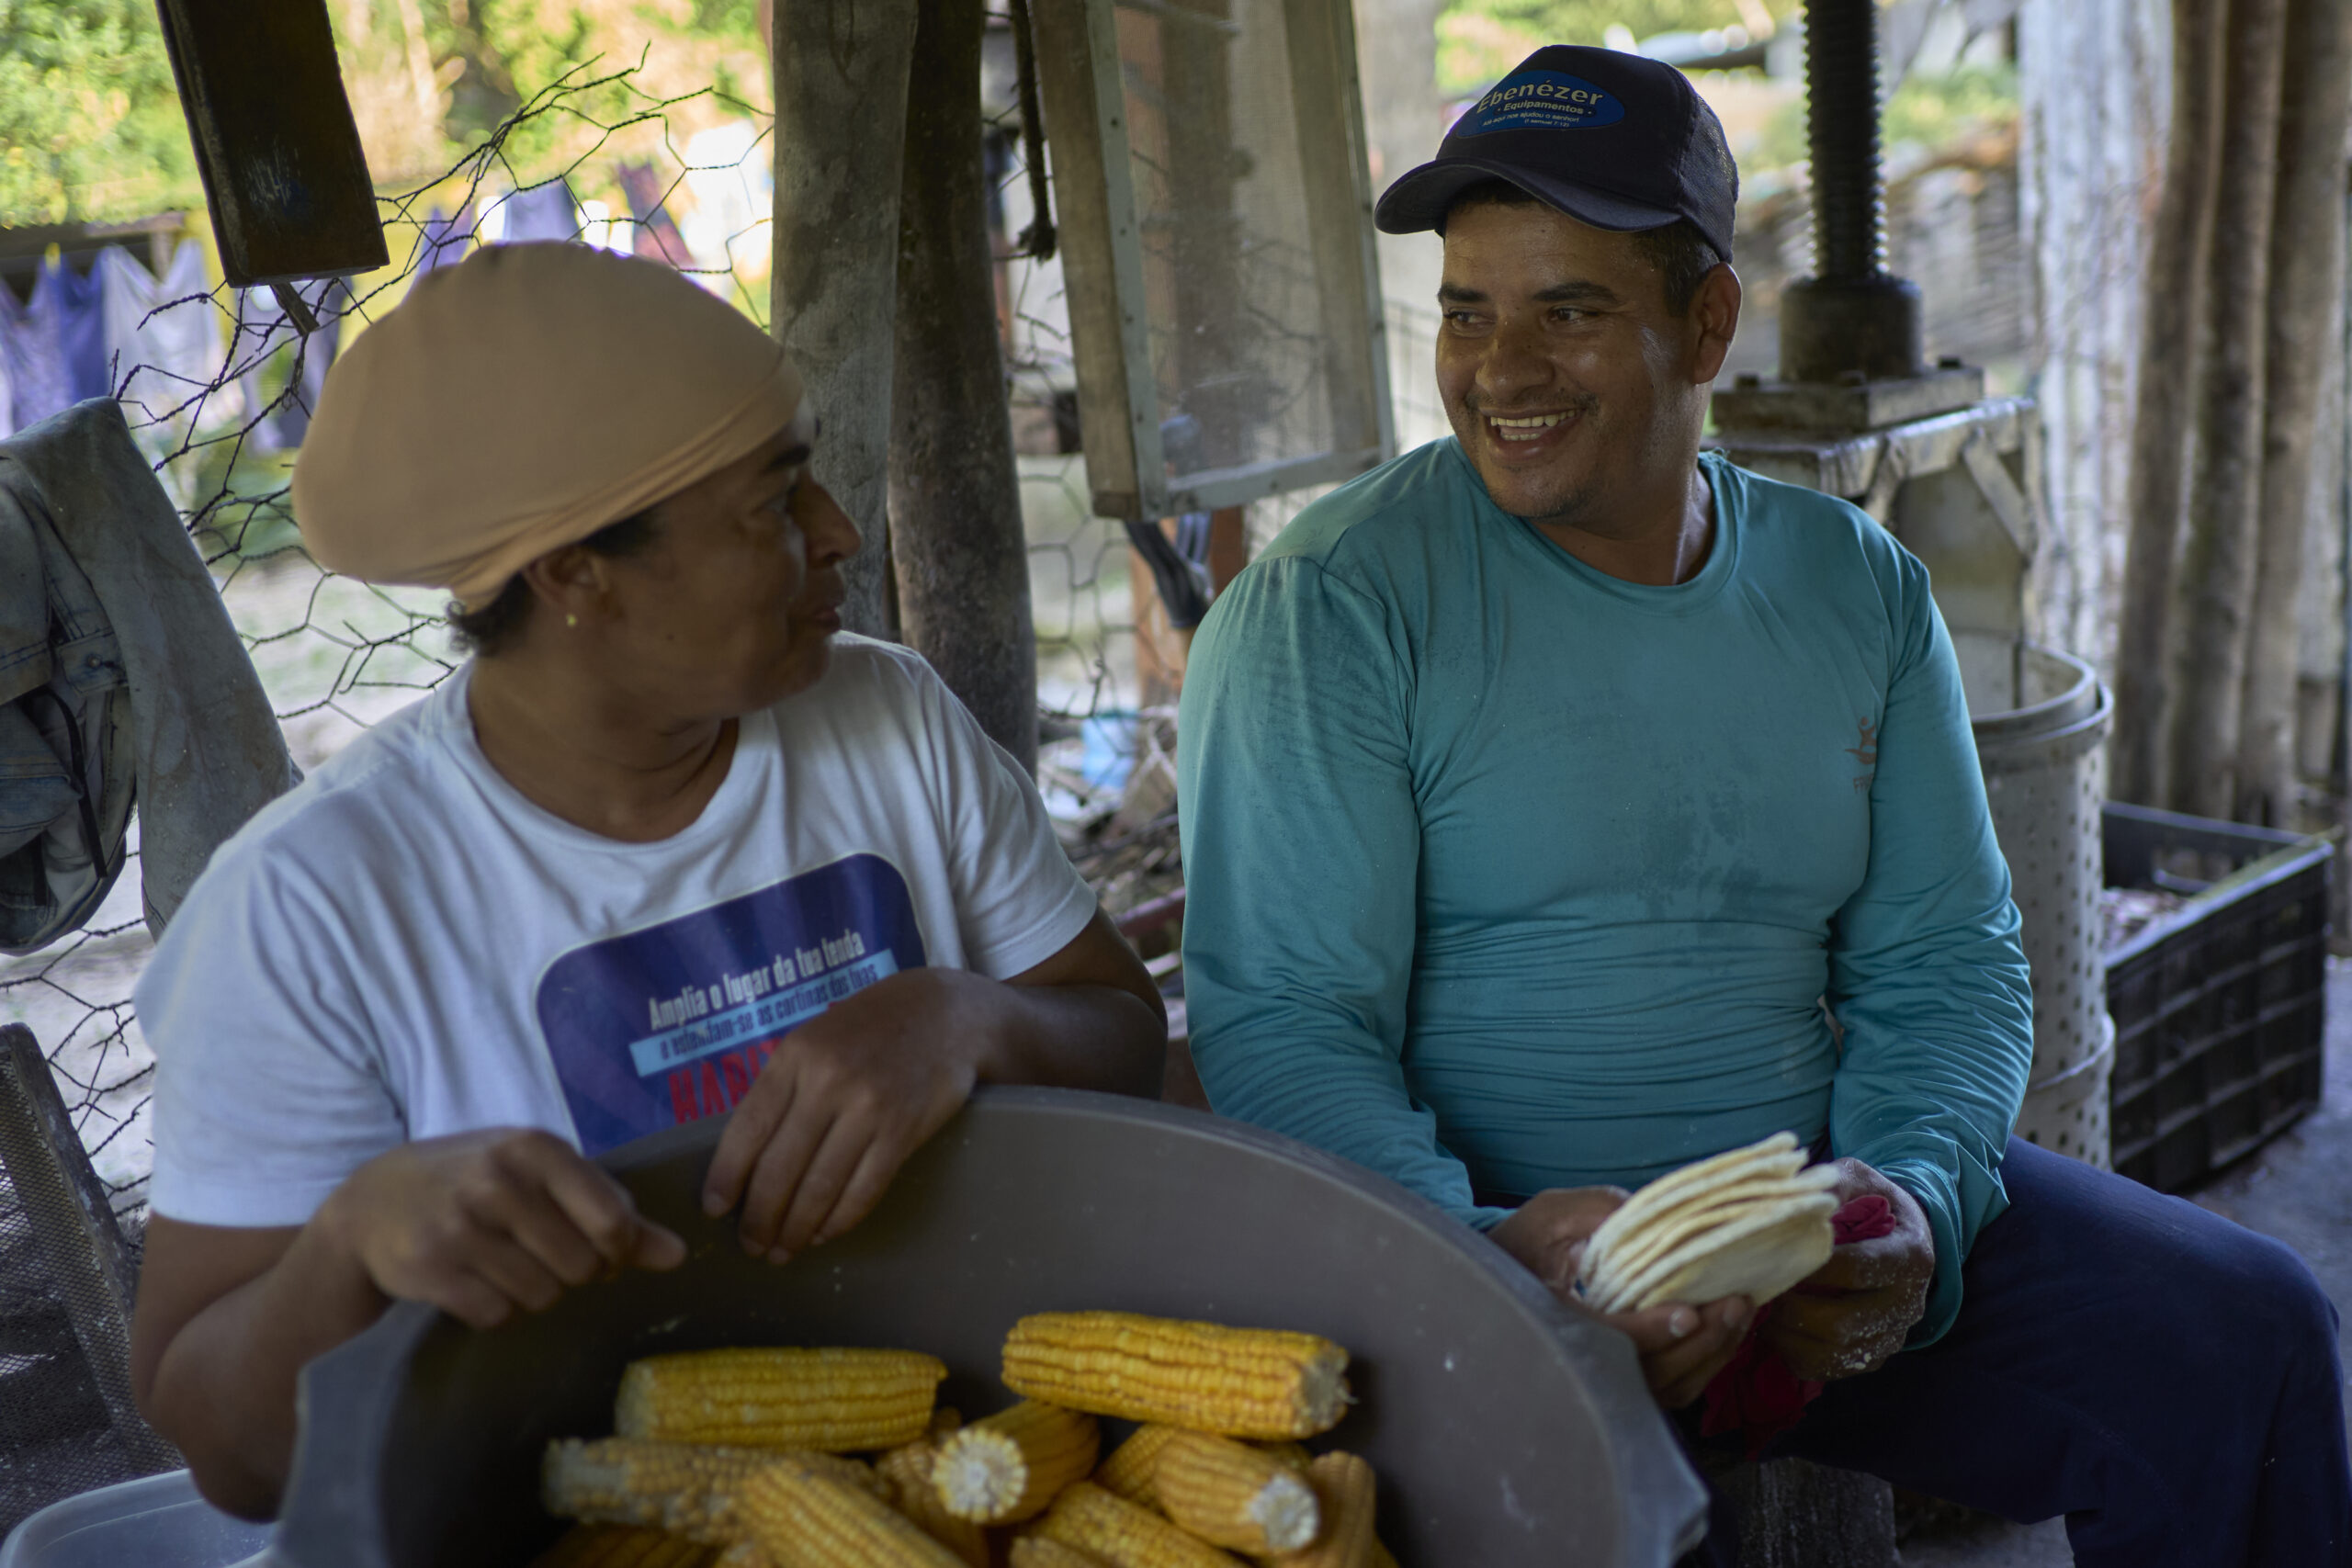 Moradores da comunidade também vendem pamonha e beiju, produzido a partir da mandioca ralada (Foto: Mariana Greif/Repórter Brasil)